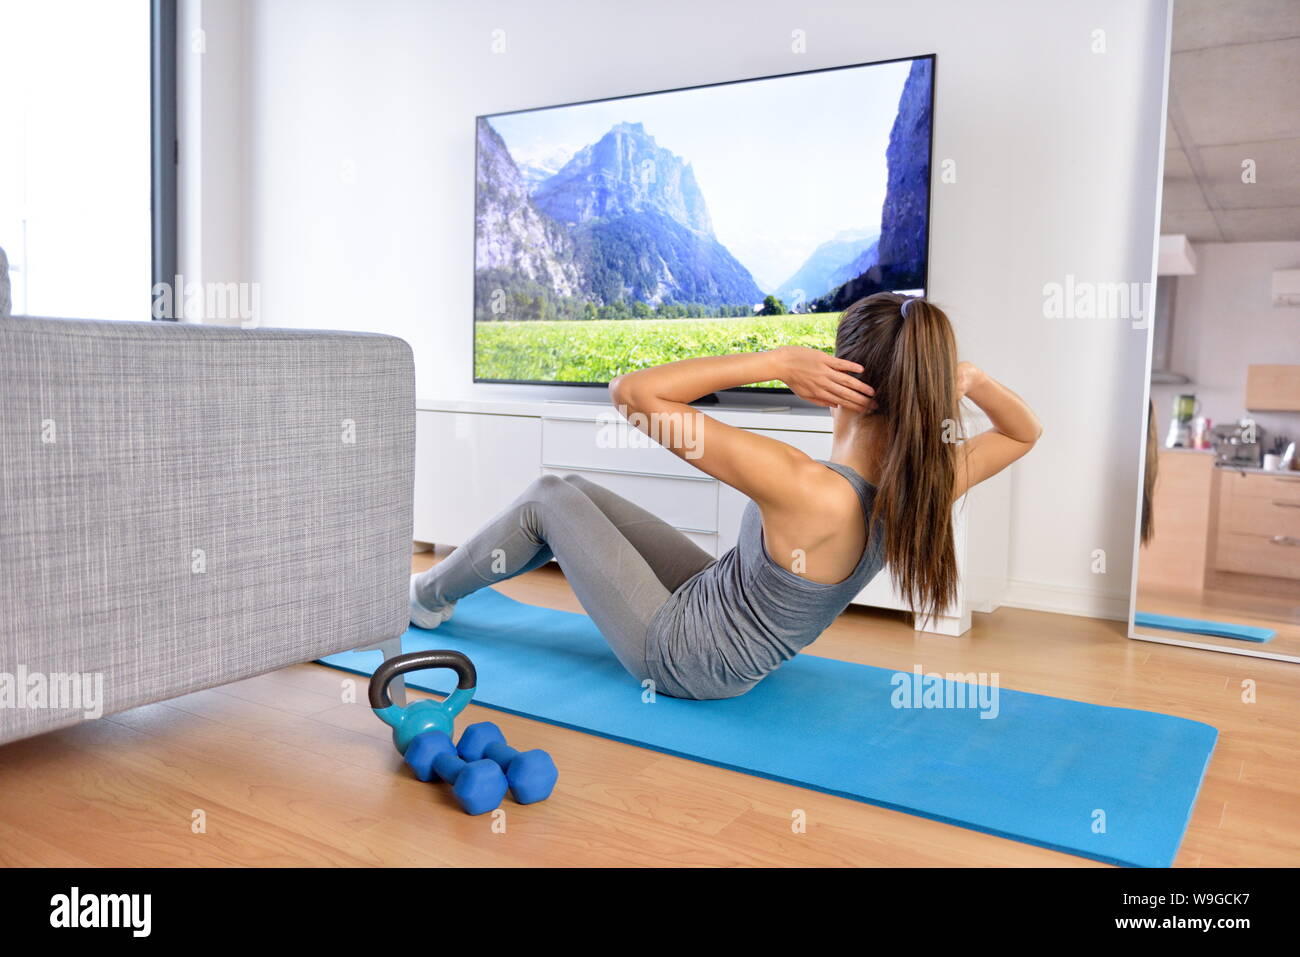 Home Training - Frau Ausübung vor einem Flachbildschirm mit einem fitnessprogramm oder Trainieren während einer TV-Show liegen auf einem Yoga Matte vor dem Sofa im Wohnzimmer eines Hauses oder einer Wohnung. Stockfoto